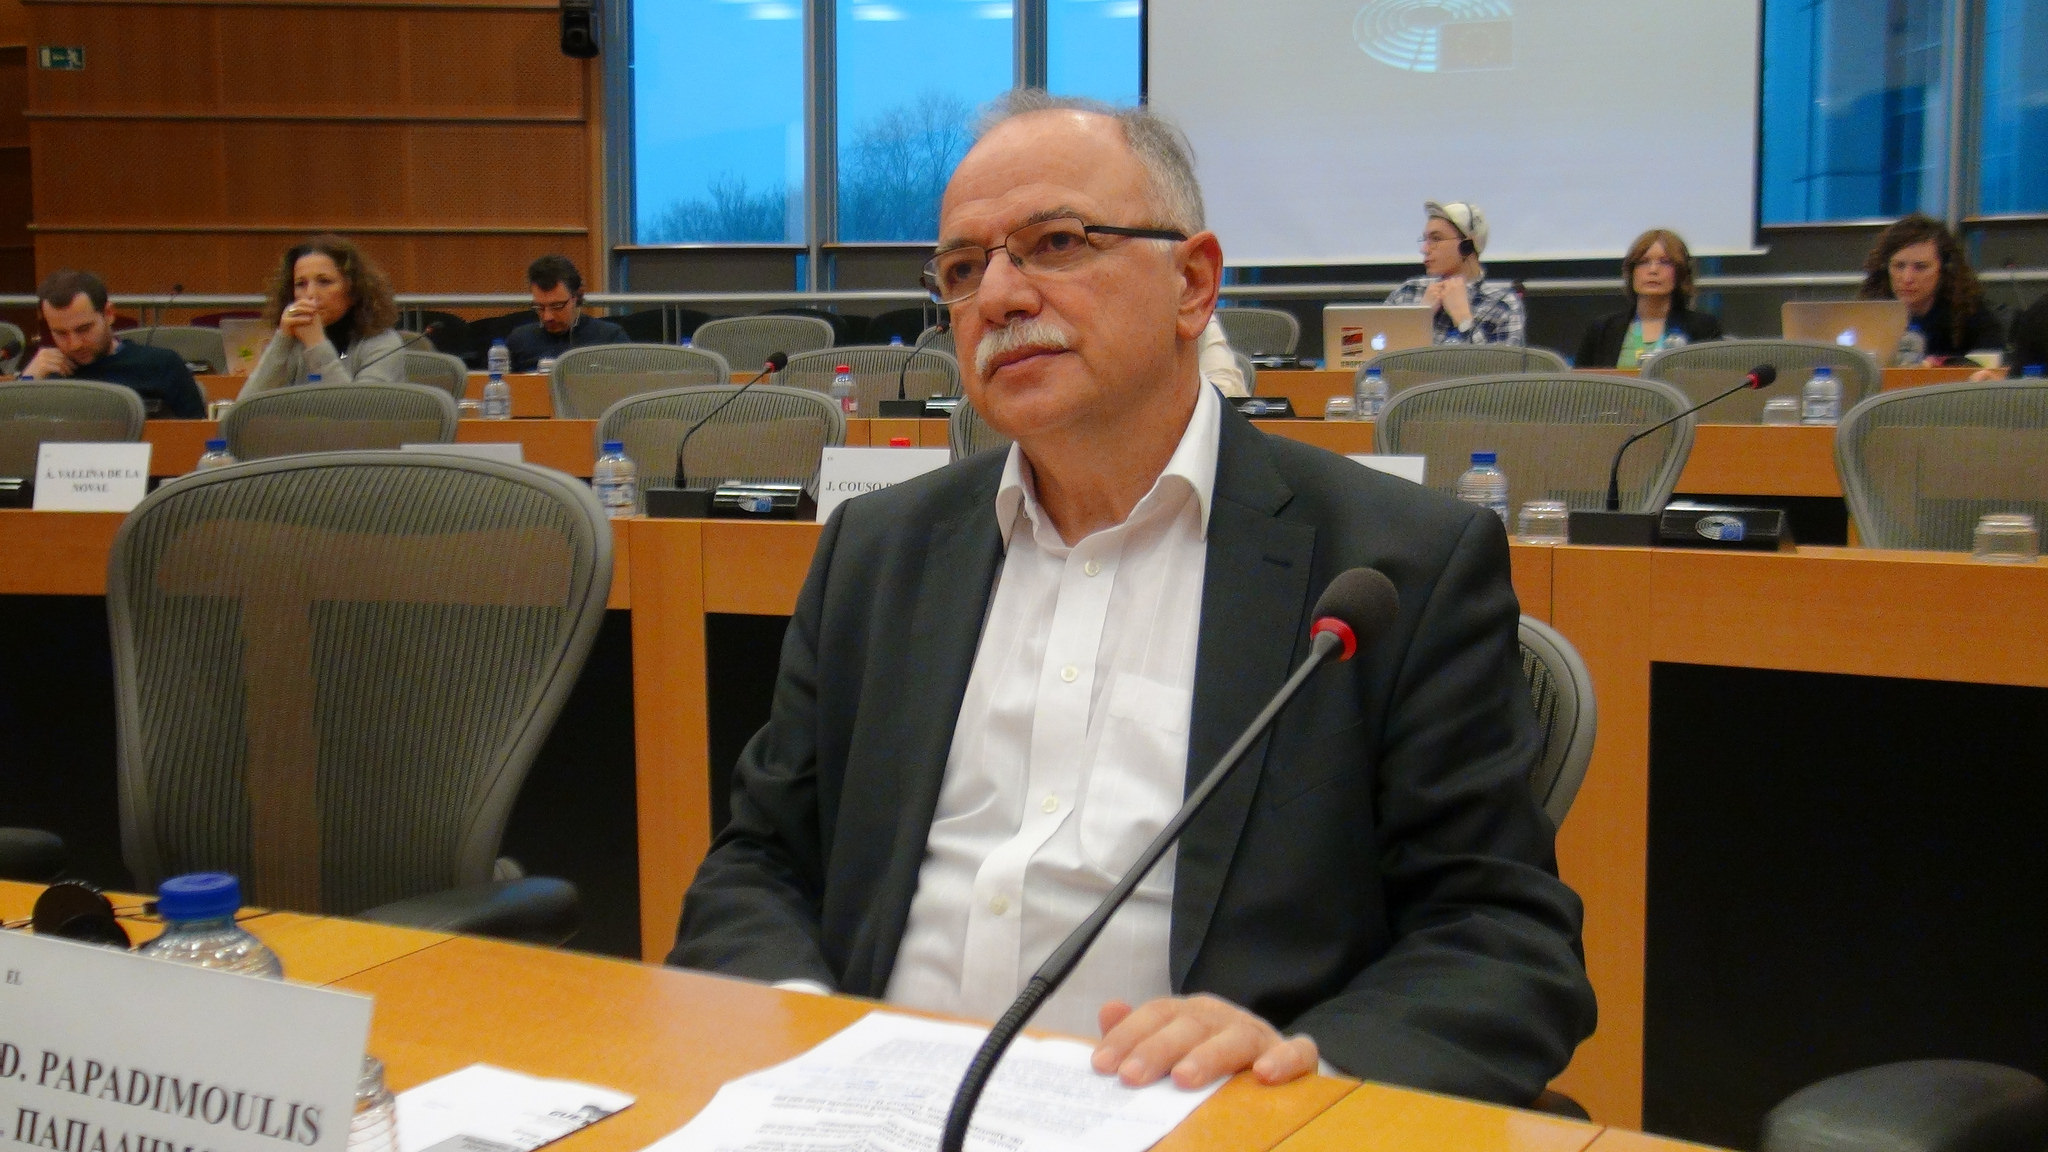 Δημ. Παπαδημούλης προς Μ. Ντράγκι: Ποιες οι τελευταίες εκτιμήσεις της ΕΚΤ, για την πορεία της ελληνικής οικονομίας, και την ολοκλήρωση της τρίτης αξιολόγησης;